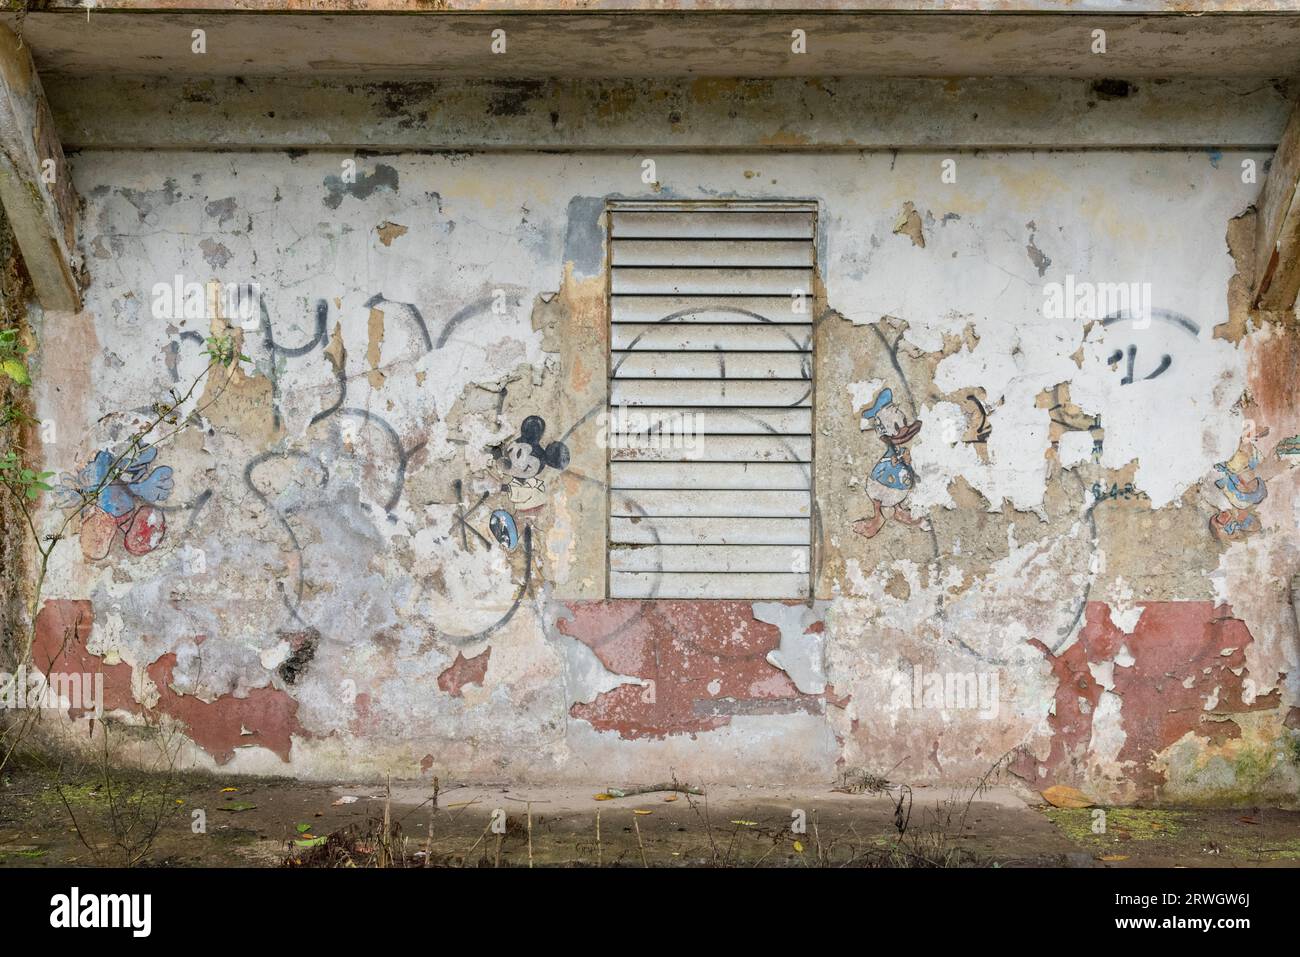 Bâtiment abandonné à Porto Rico mettant en vedette les personnages de dessins animés de Walt Disney Donald Duck et Mickey Mouse Banque D'Images